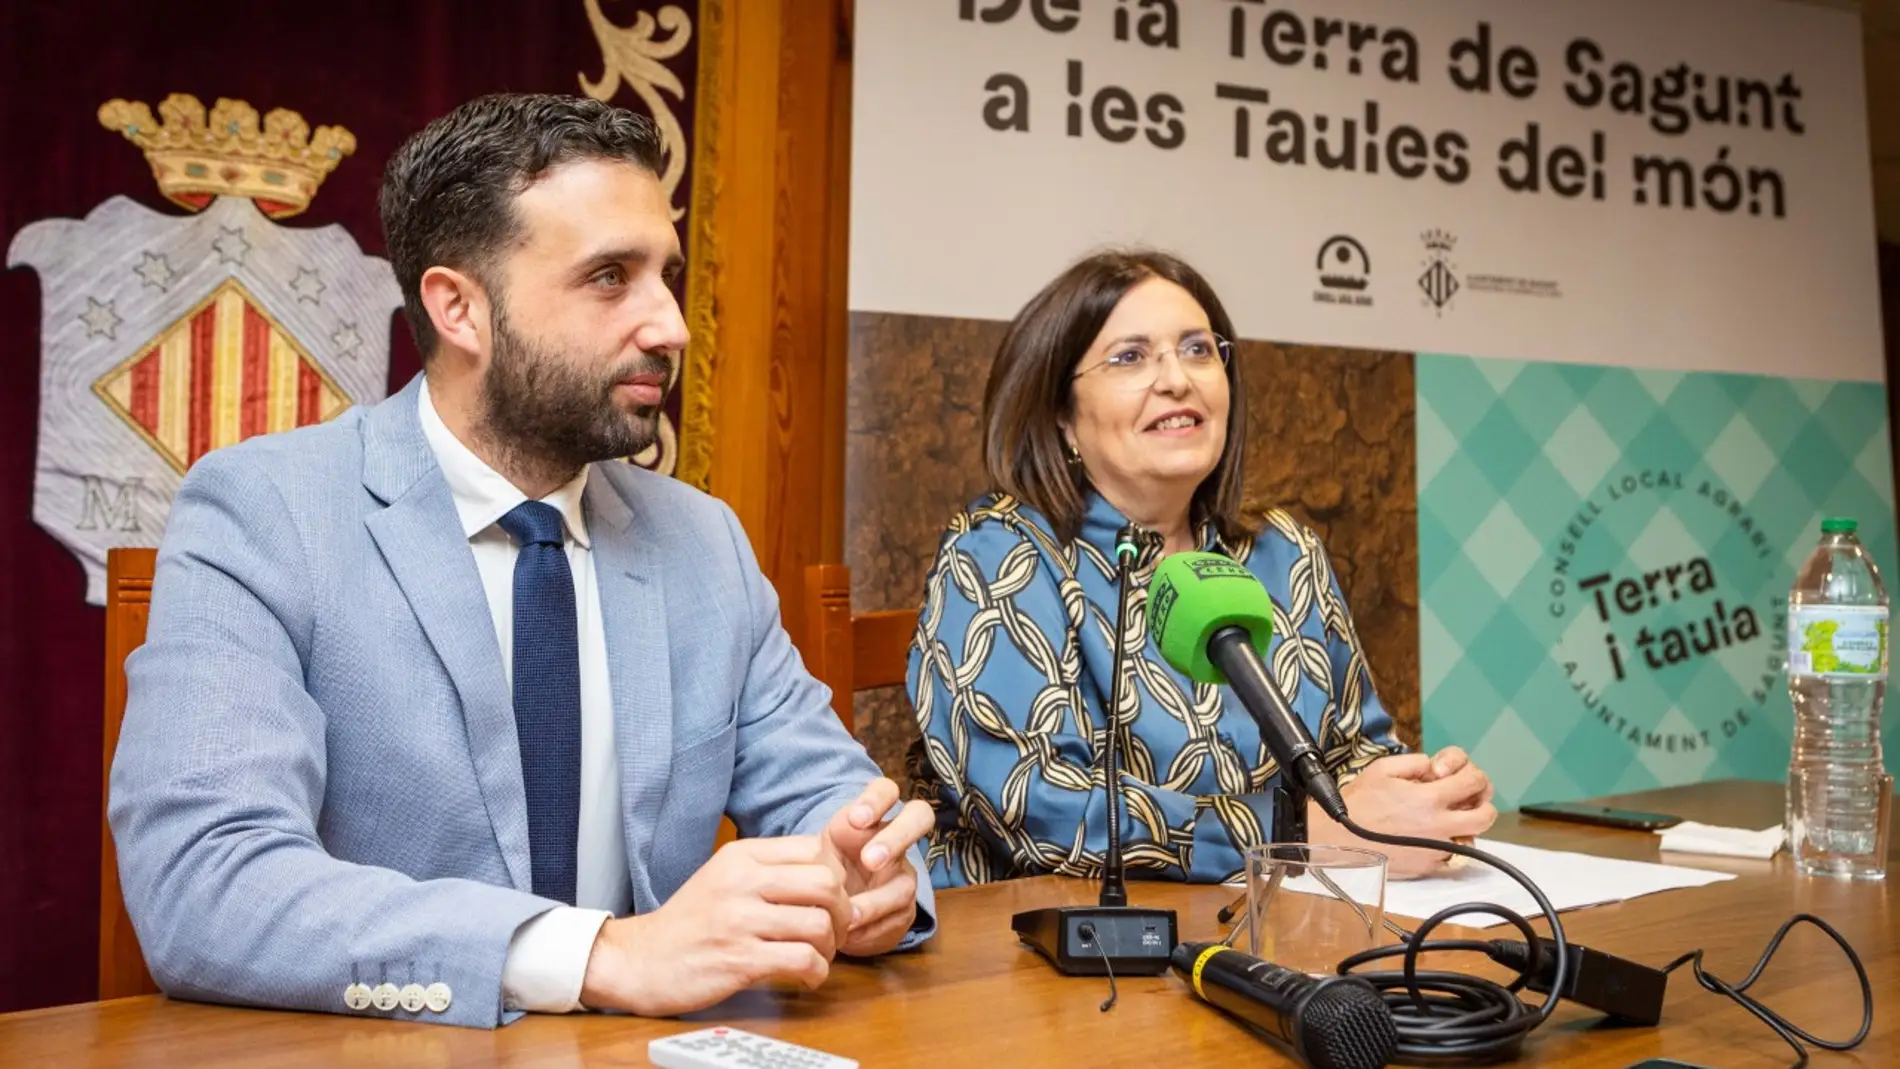 El alcalde de Sagunto, Darío Moreno, y la presidenta del Consell Agrari y concejal de Agricultura, Ana María Quesada, en la presentación de 'Sagunt: Terra i Taula'